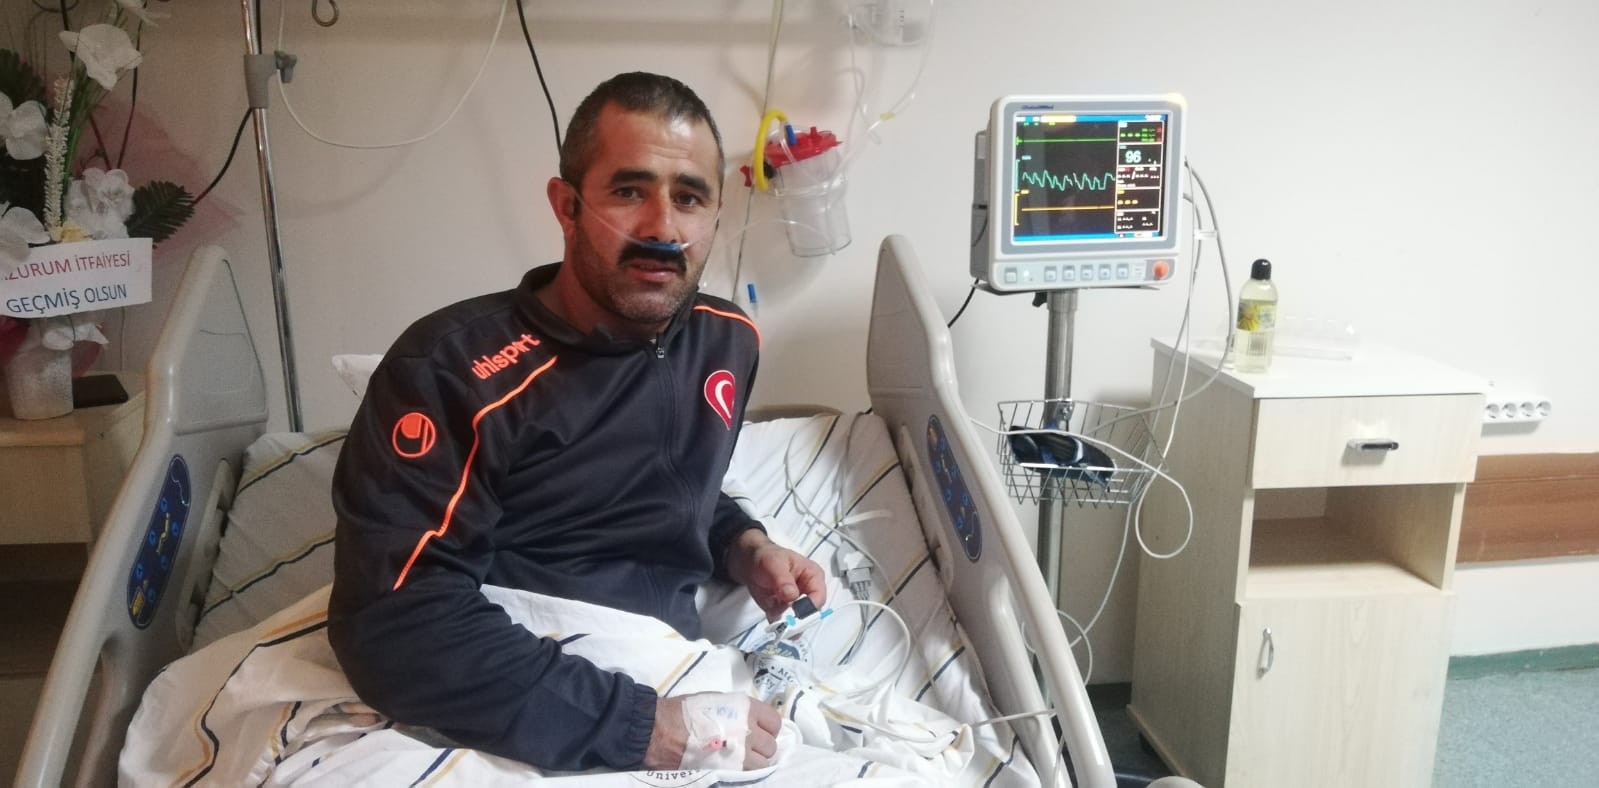 Afganlı çocukları yangından kurtarıp oksijen maskesini verdi, kalp krizi geçirdi